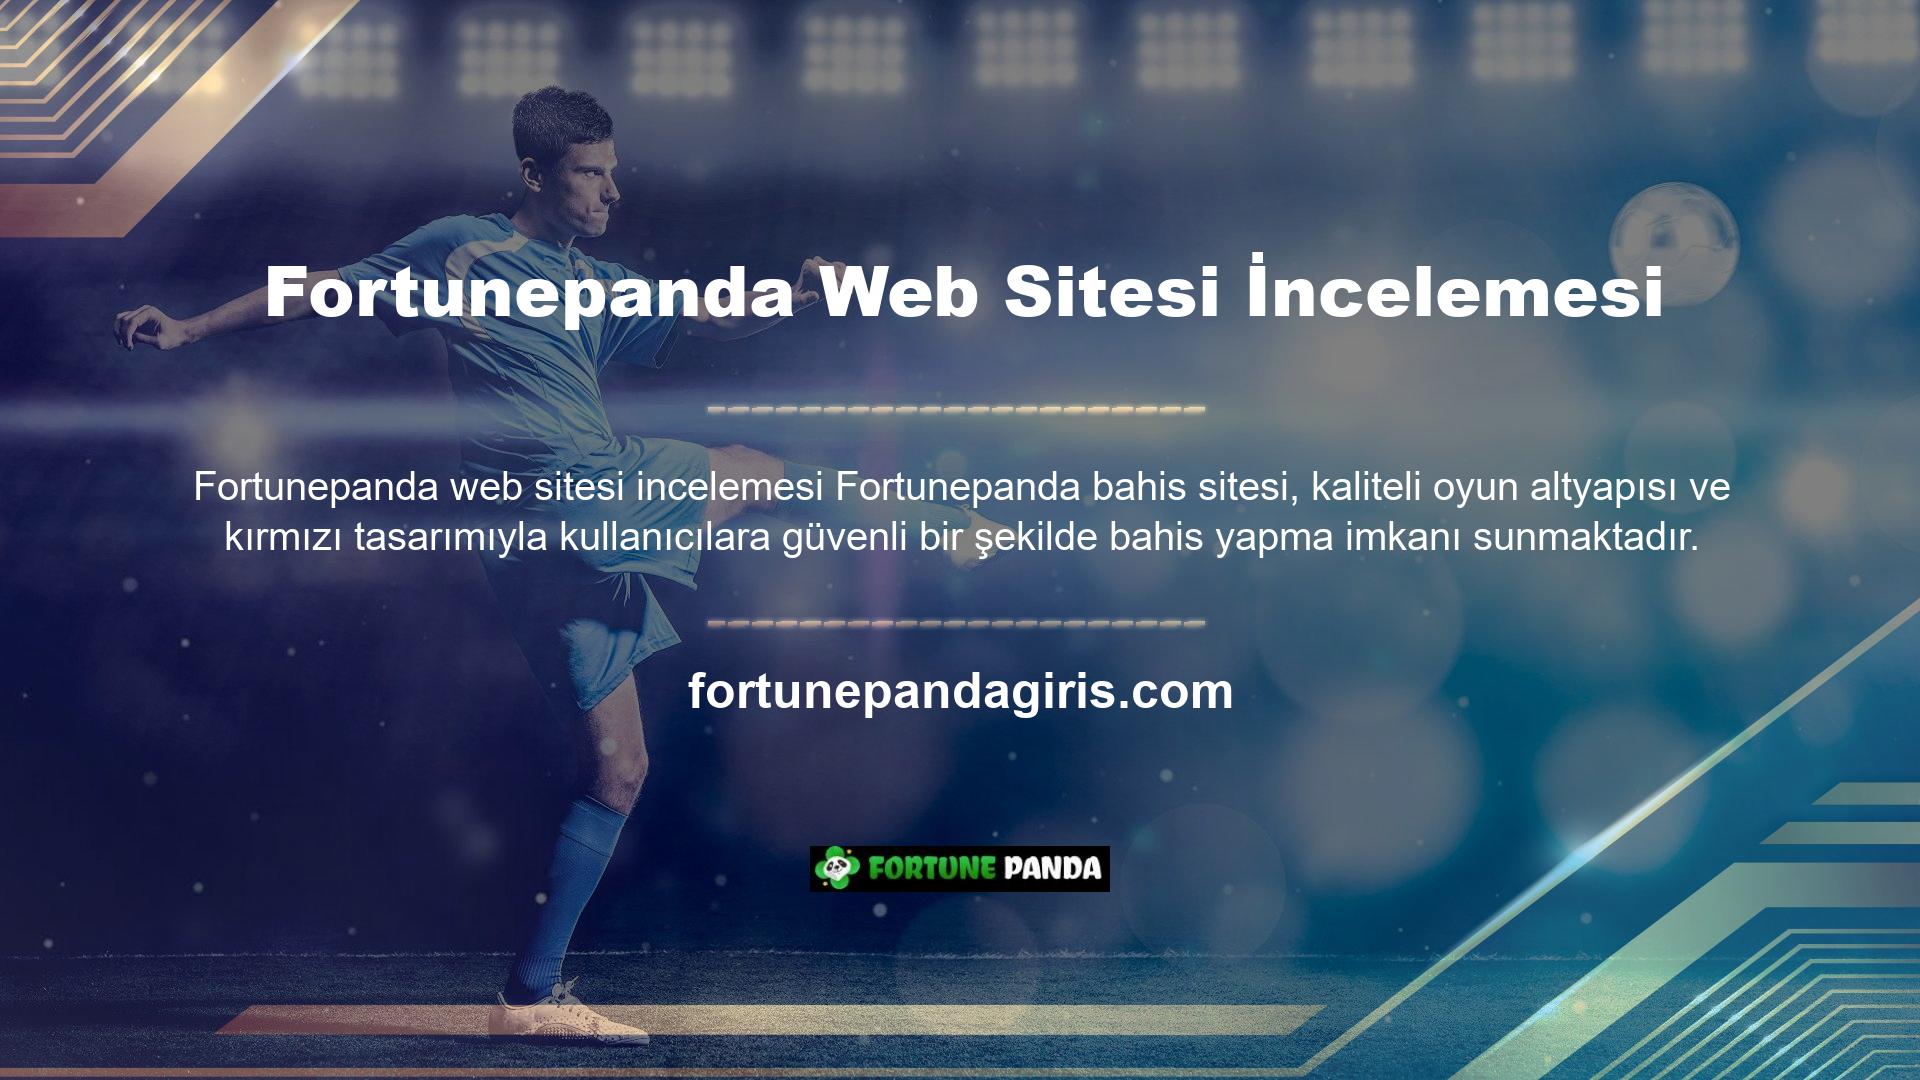 Site, Türkçe, Rusça ve İngilizce olmak üzere üç dil seçeneğinde bahis oynamanıza olanak sağlıyor